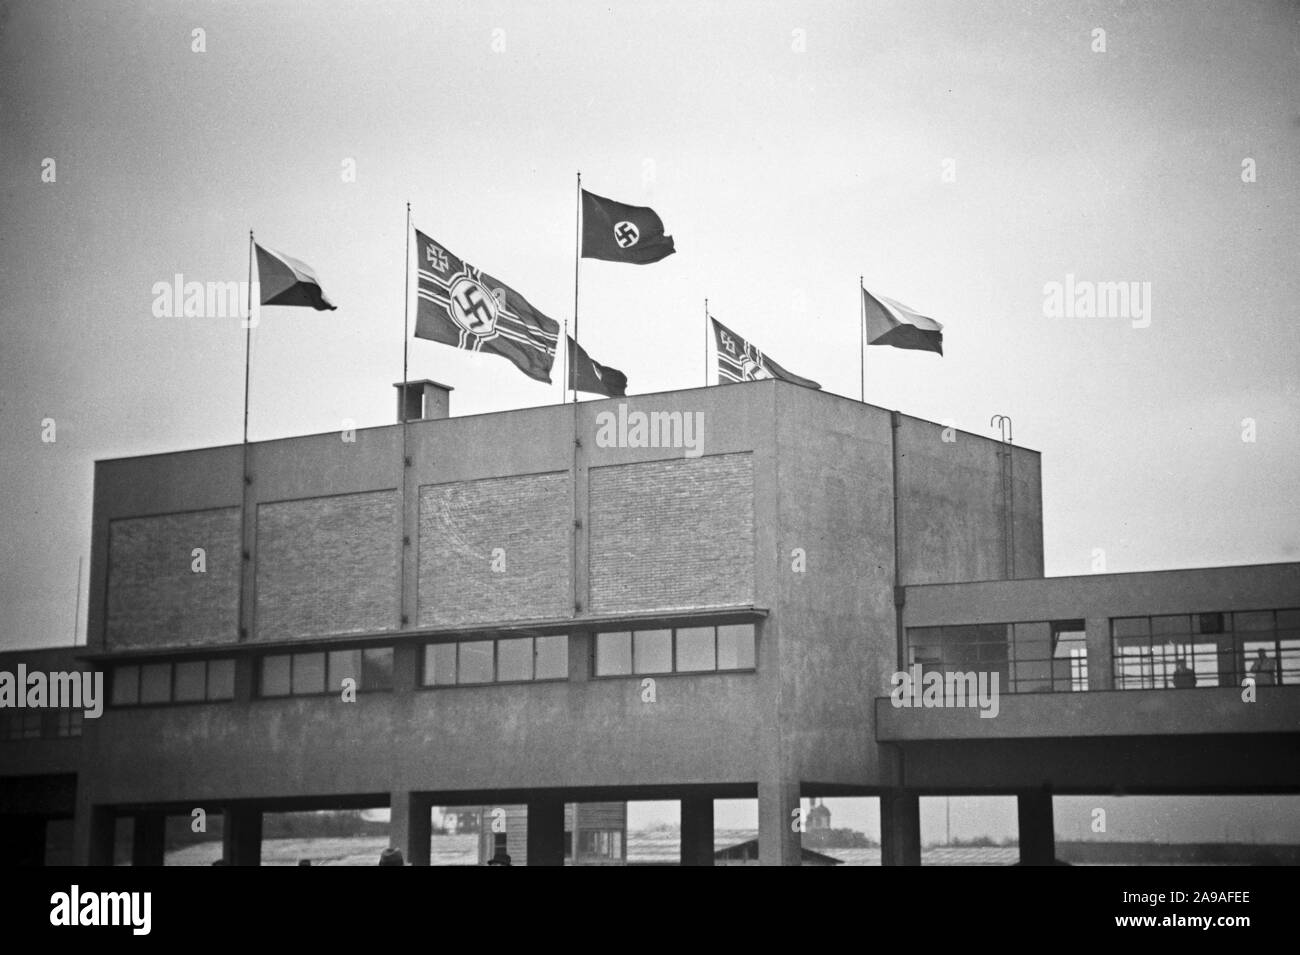 Aprile im Sokol Stadion, wo die Geburtstagsfeier stattfand, zum ersten stampo maschio Hakenkreuzfahne, rechts und links die tschechische Fahne, 1930er Jahre Foto Stock